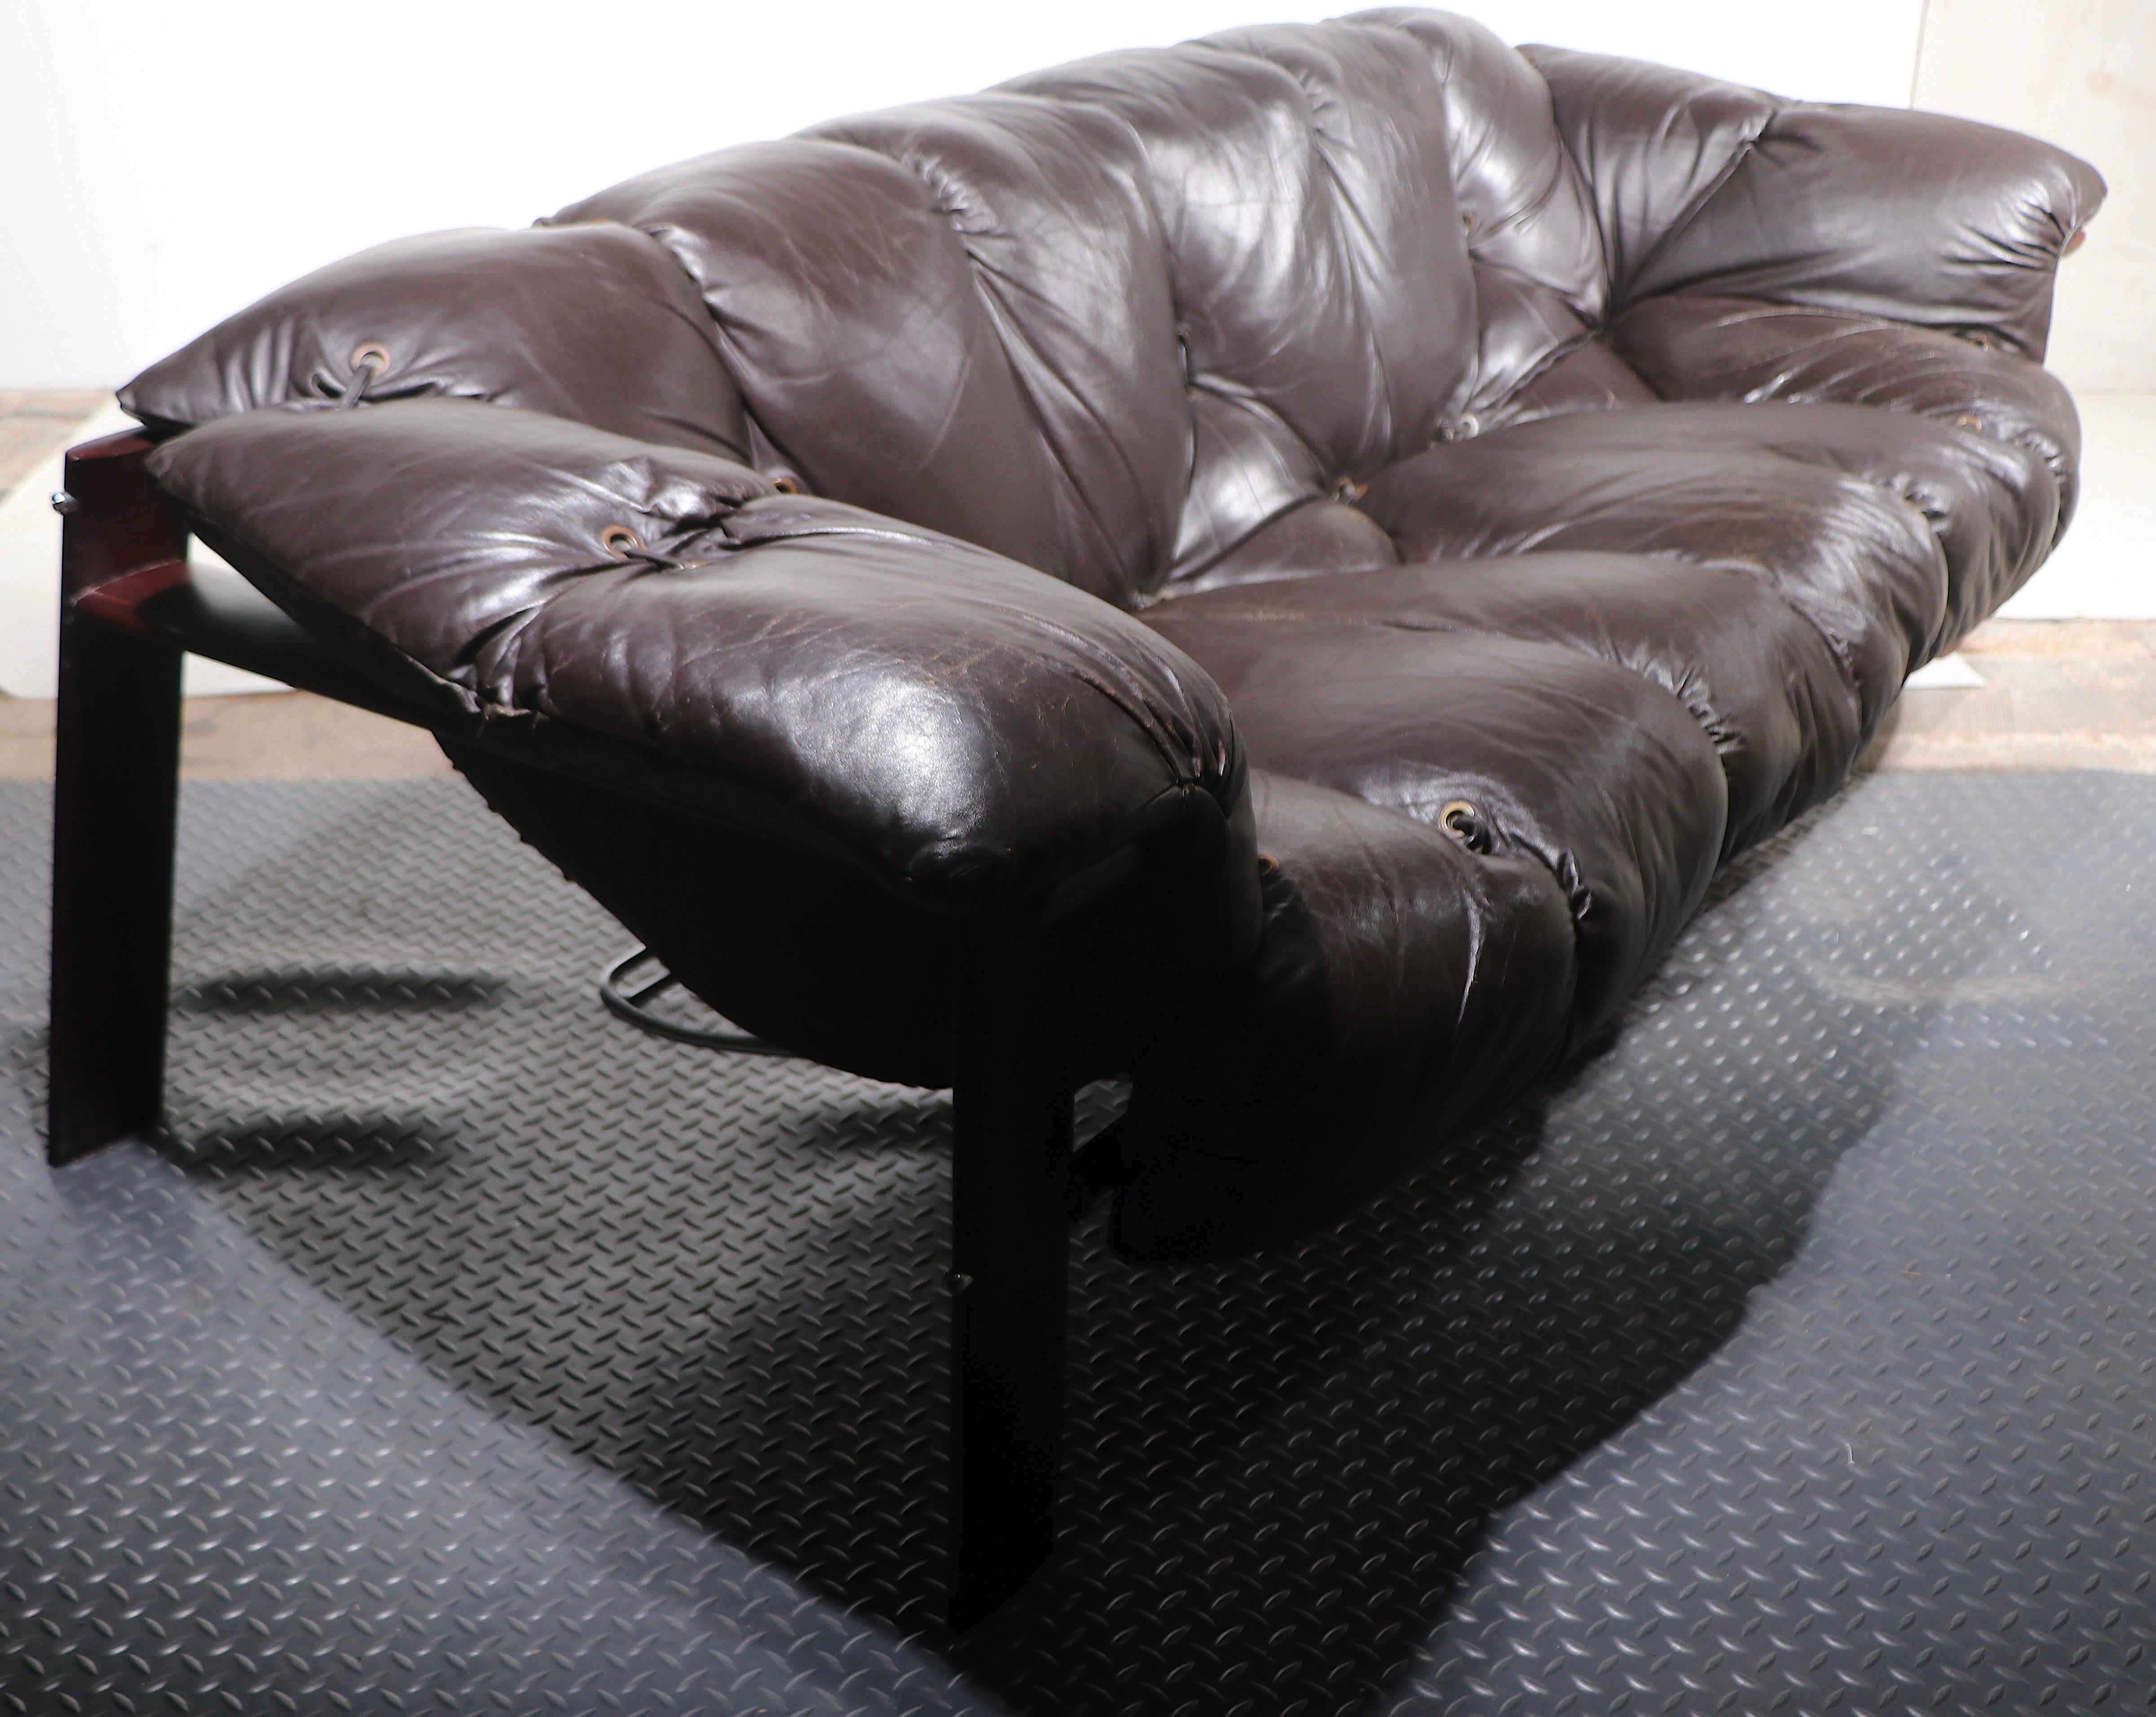 Rare canapé Brutalist Mid Century, designé par Percival Lafer, fabriqué au Brésil, circa 1970's. Le canapé est constitué d'un cadre en bois dur rare et d'une assise et d'un dossier continus en cuir marron, originaux et extrêmement confortables. Le